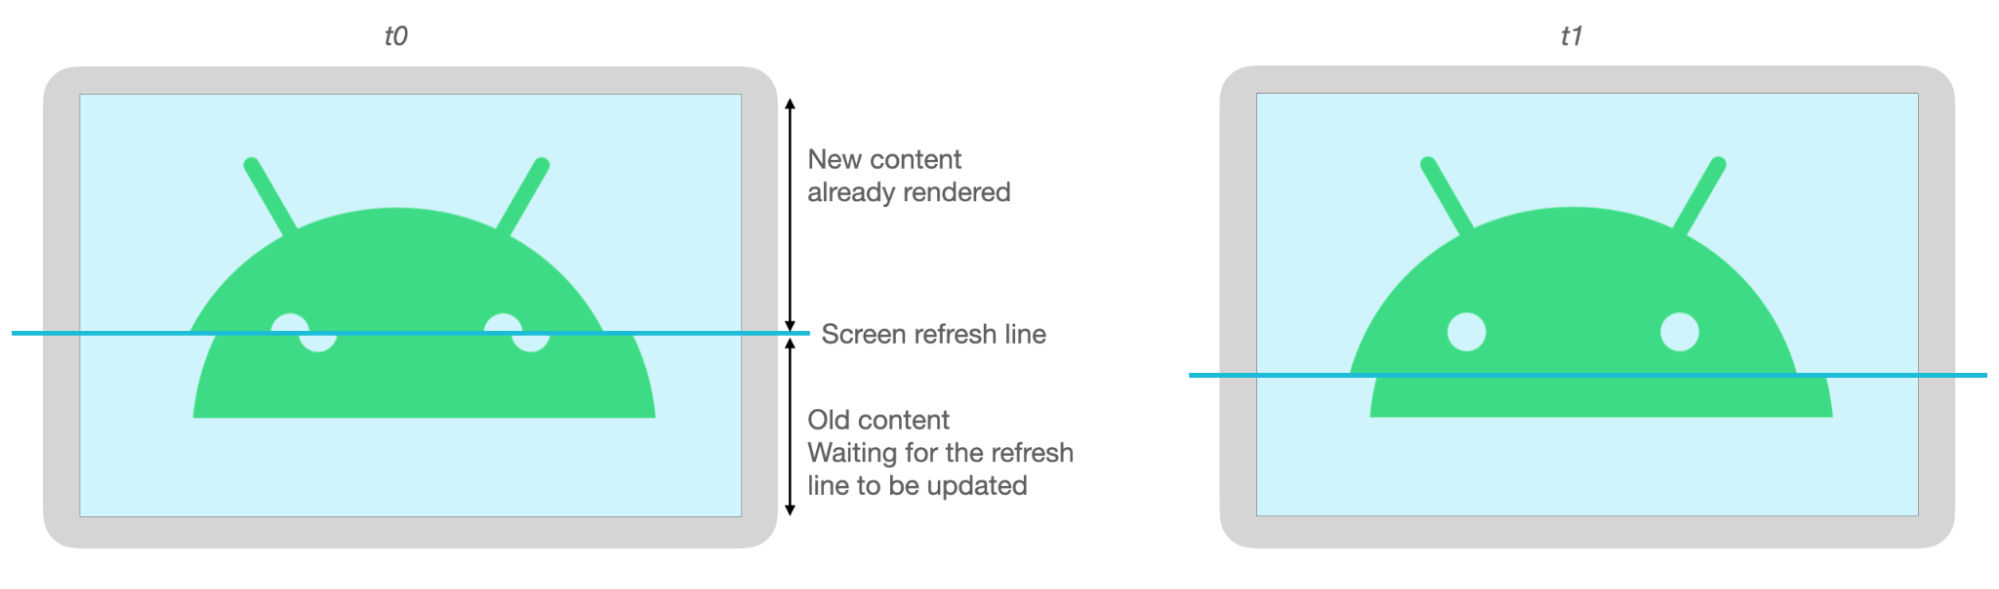 Các phần phía trên và dưới của hình ảnh Android bị lệch do hiện tượng xé hình khi làm mới màn hình.